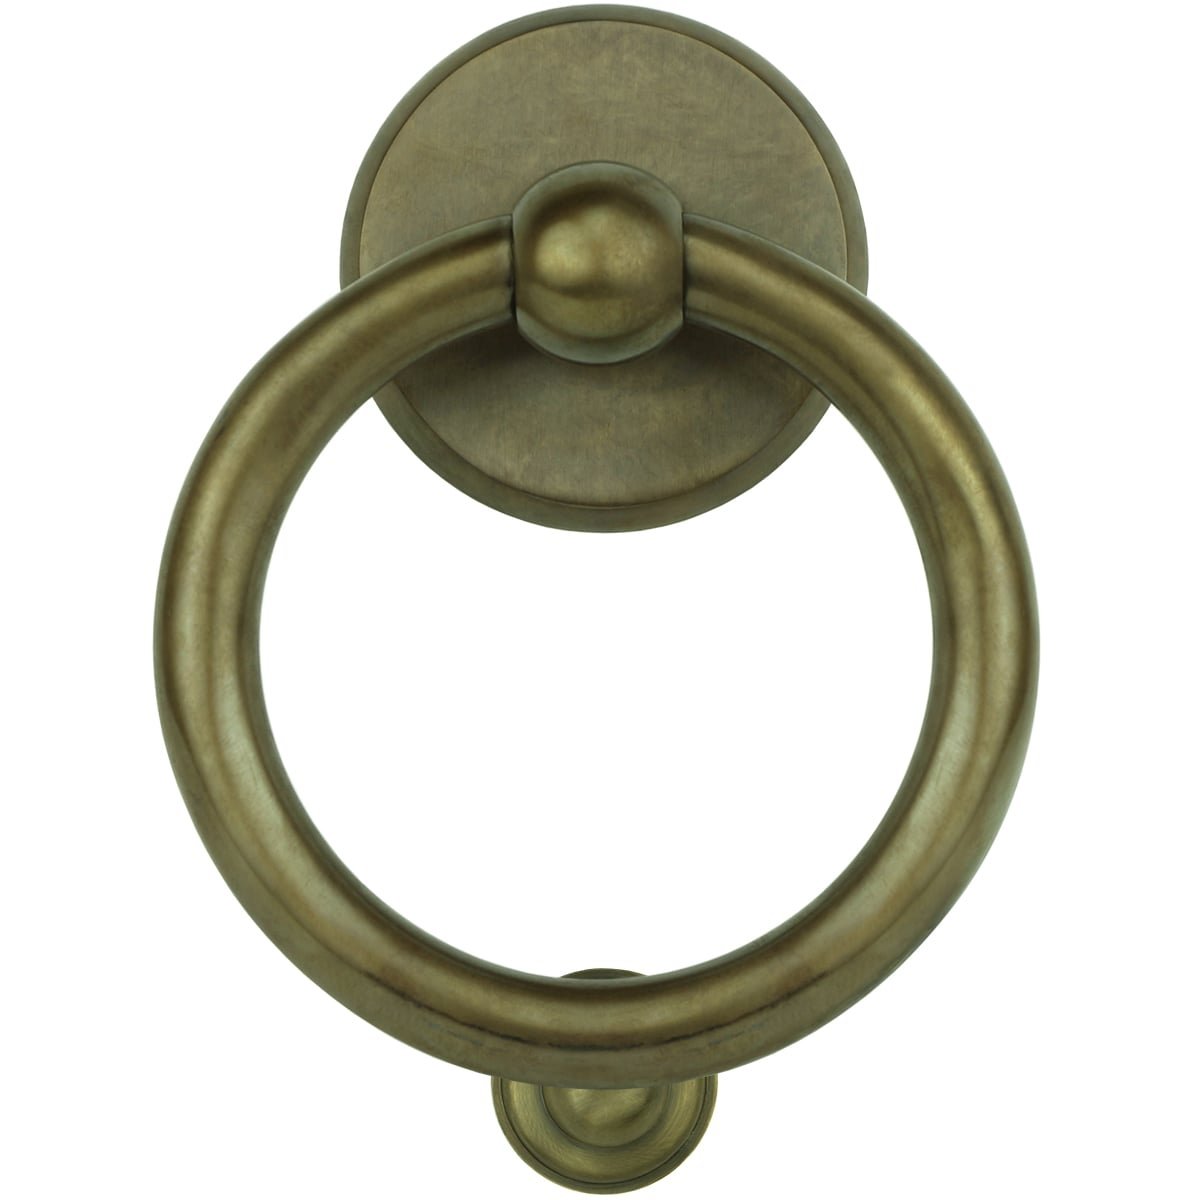 Ring klopper landelijk brons Gröditz - 160 mm